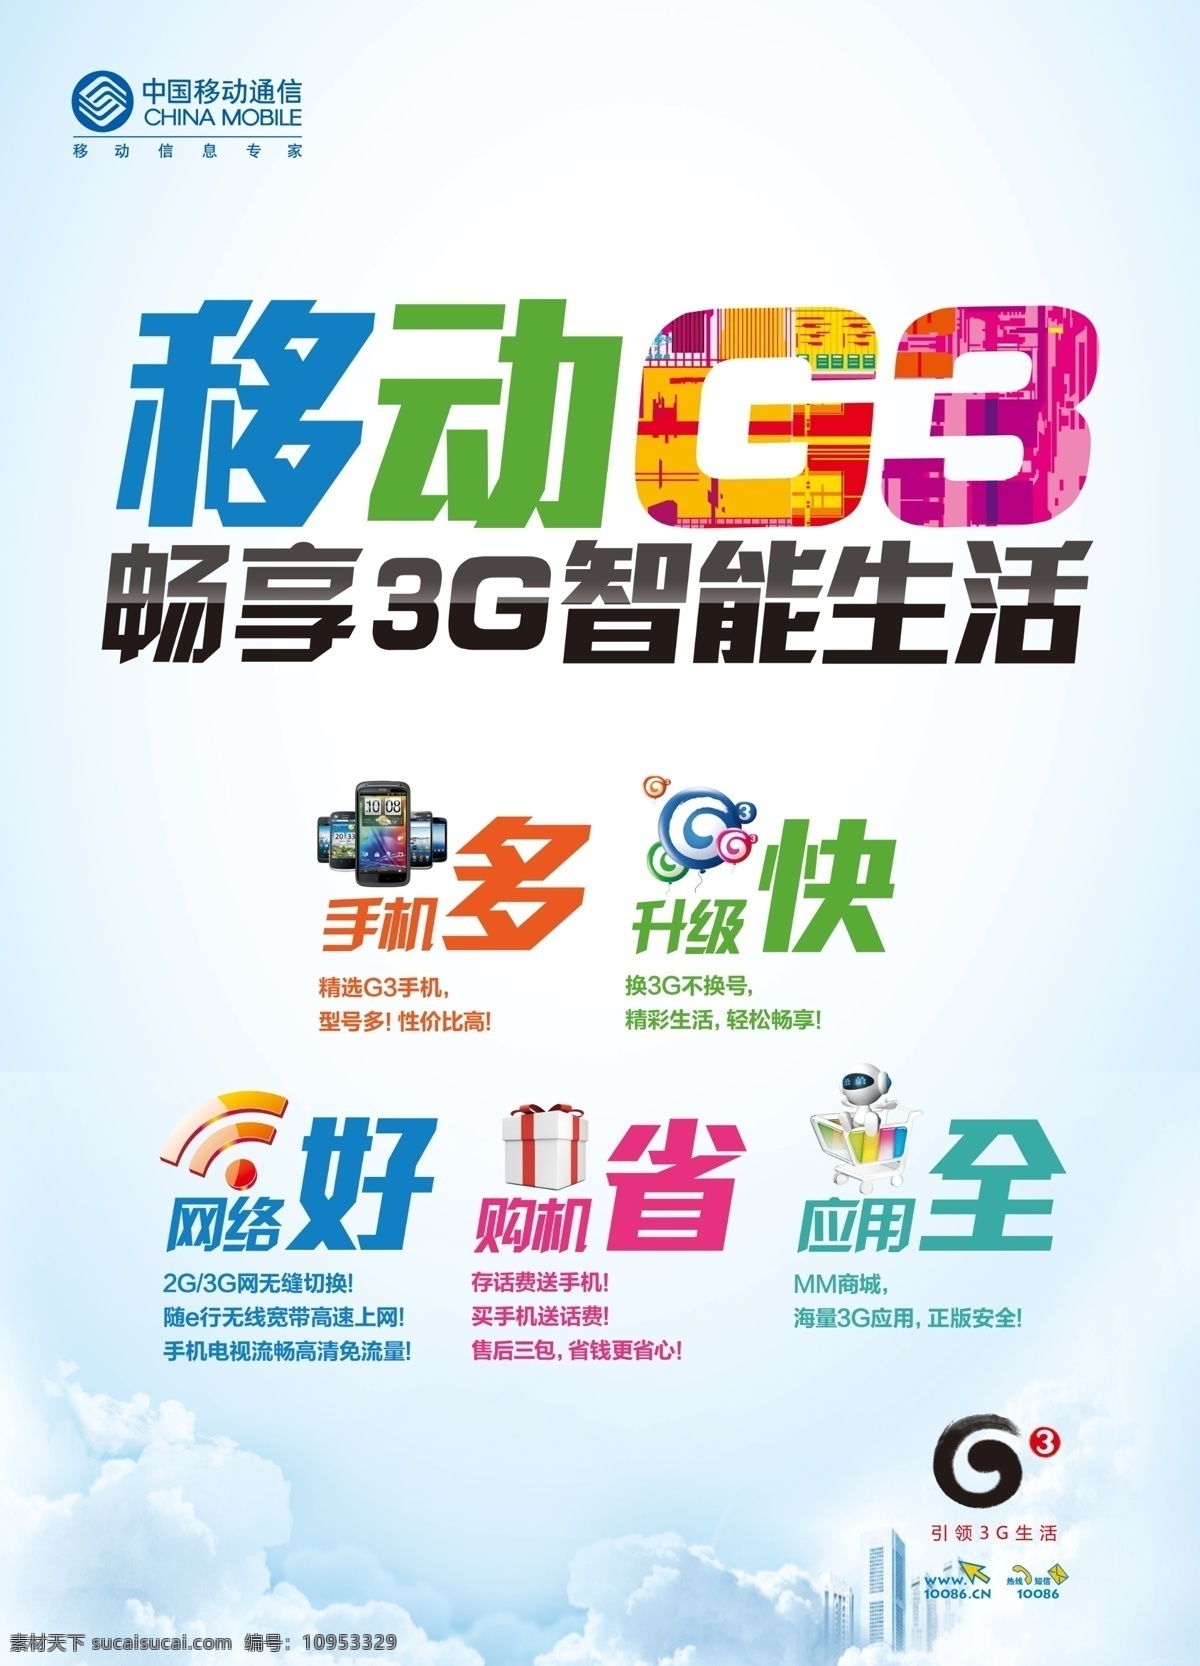 移动g3海报 中国移动通信 移动 g3 畅 享 3g 智能 生活 多快好省全 移动标志 3g标志 浅蓝色背景 海报 分层 宣传 广告 广告设计模板 源文件